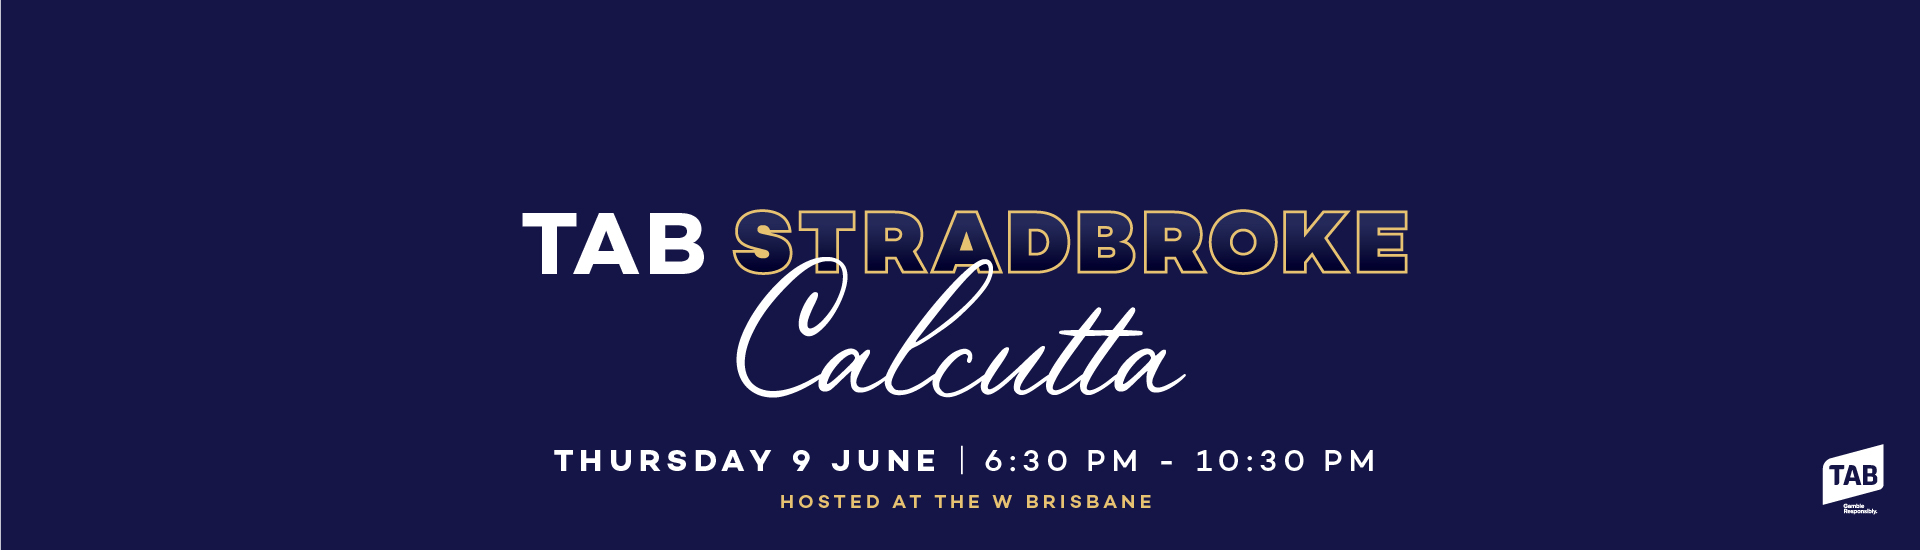 Stradbroke-Calcutta_Web-banner-1920x550 | Brisbane Racing Club